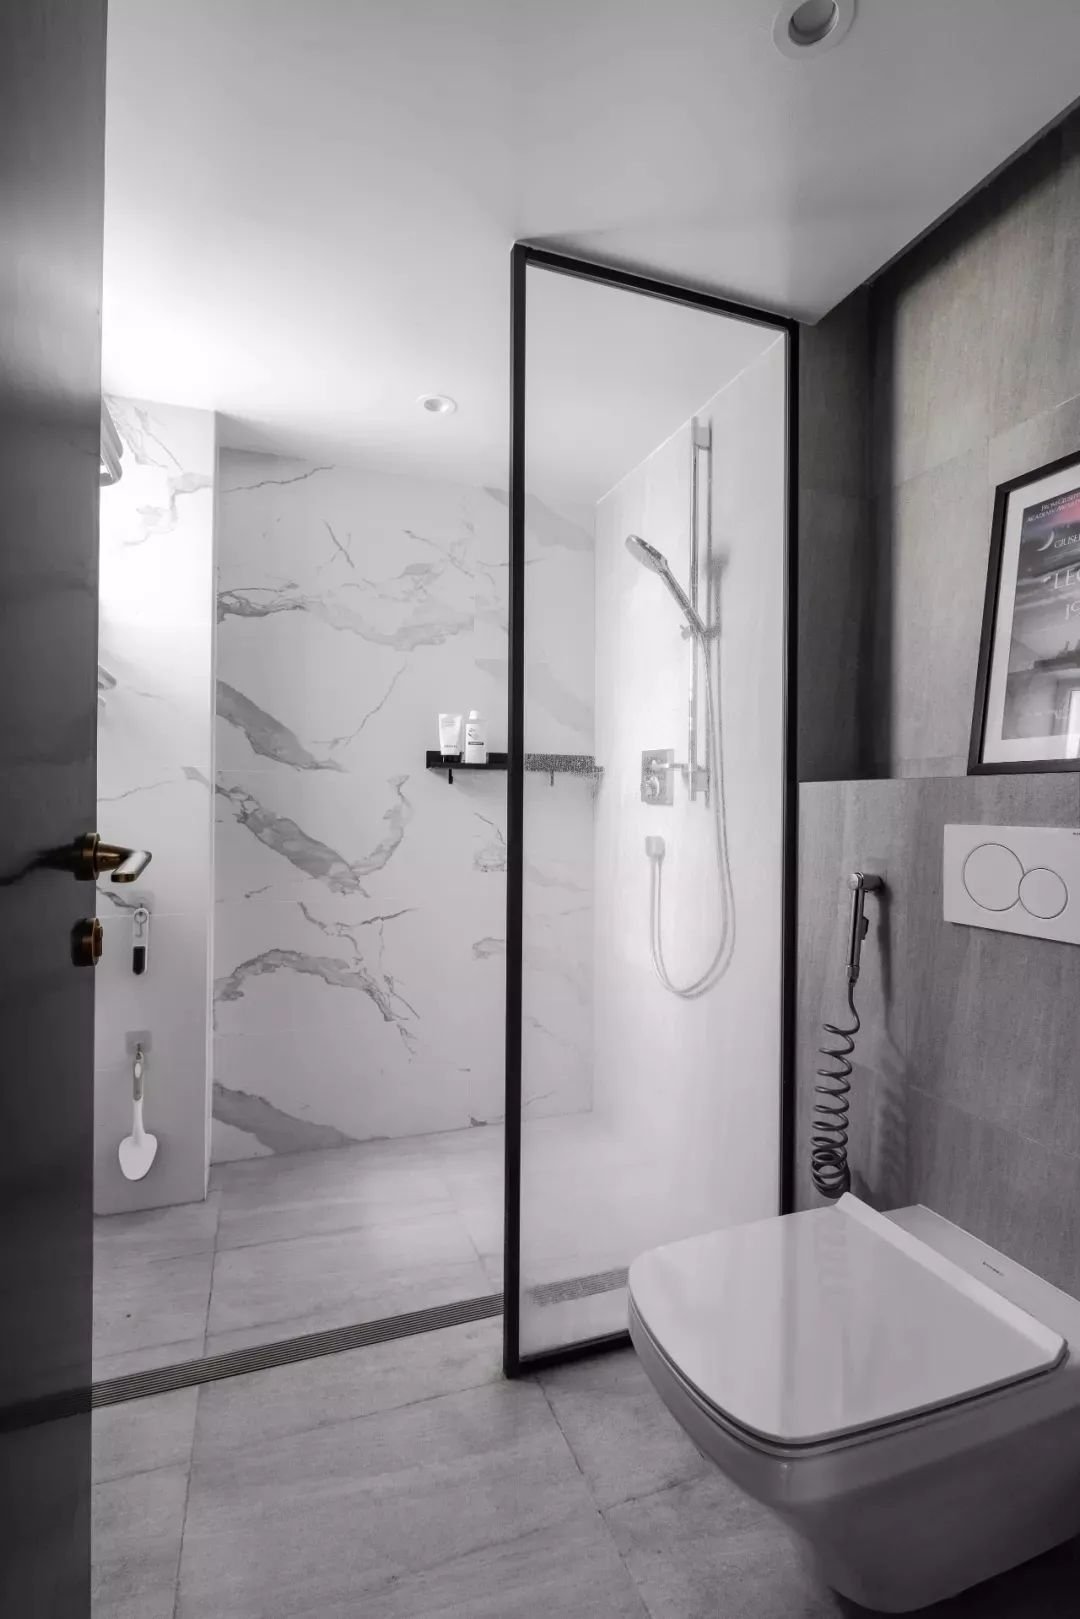 6款超全淋浴房设计改造你最中意哪一款